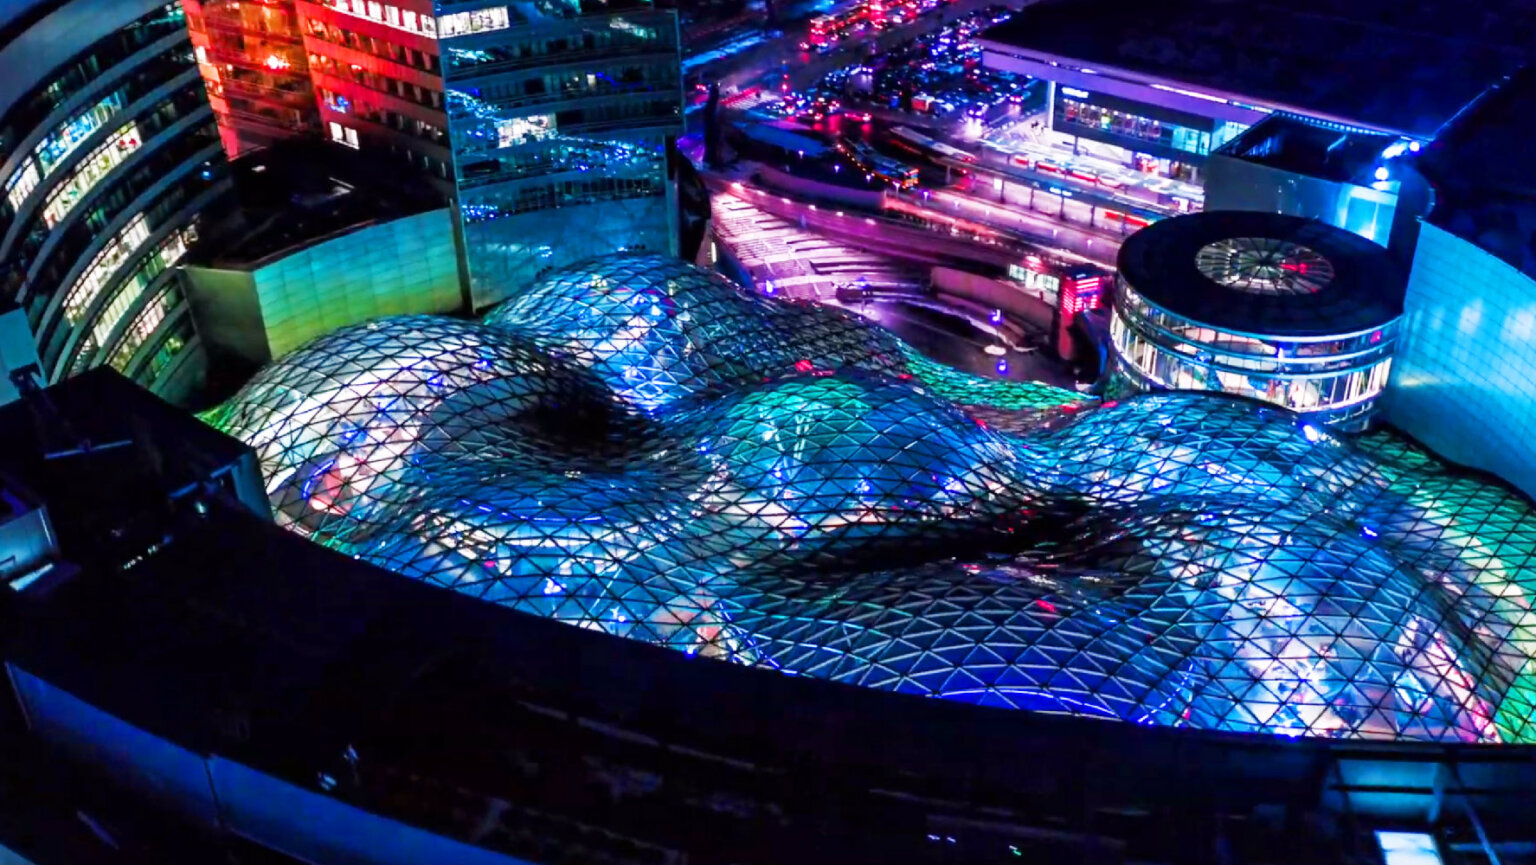 Warszawa w Barwach Tokyo. Widok na Złote Tarasy z góry, przeszklona konstrukcja zaokrąglonych kopuł podświetlona jest na niebiesko, wyraźnie widać trójkątną teksturę kopuł.